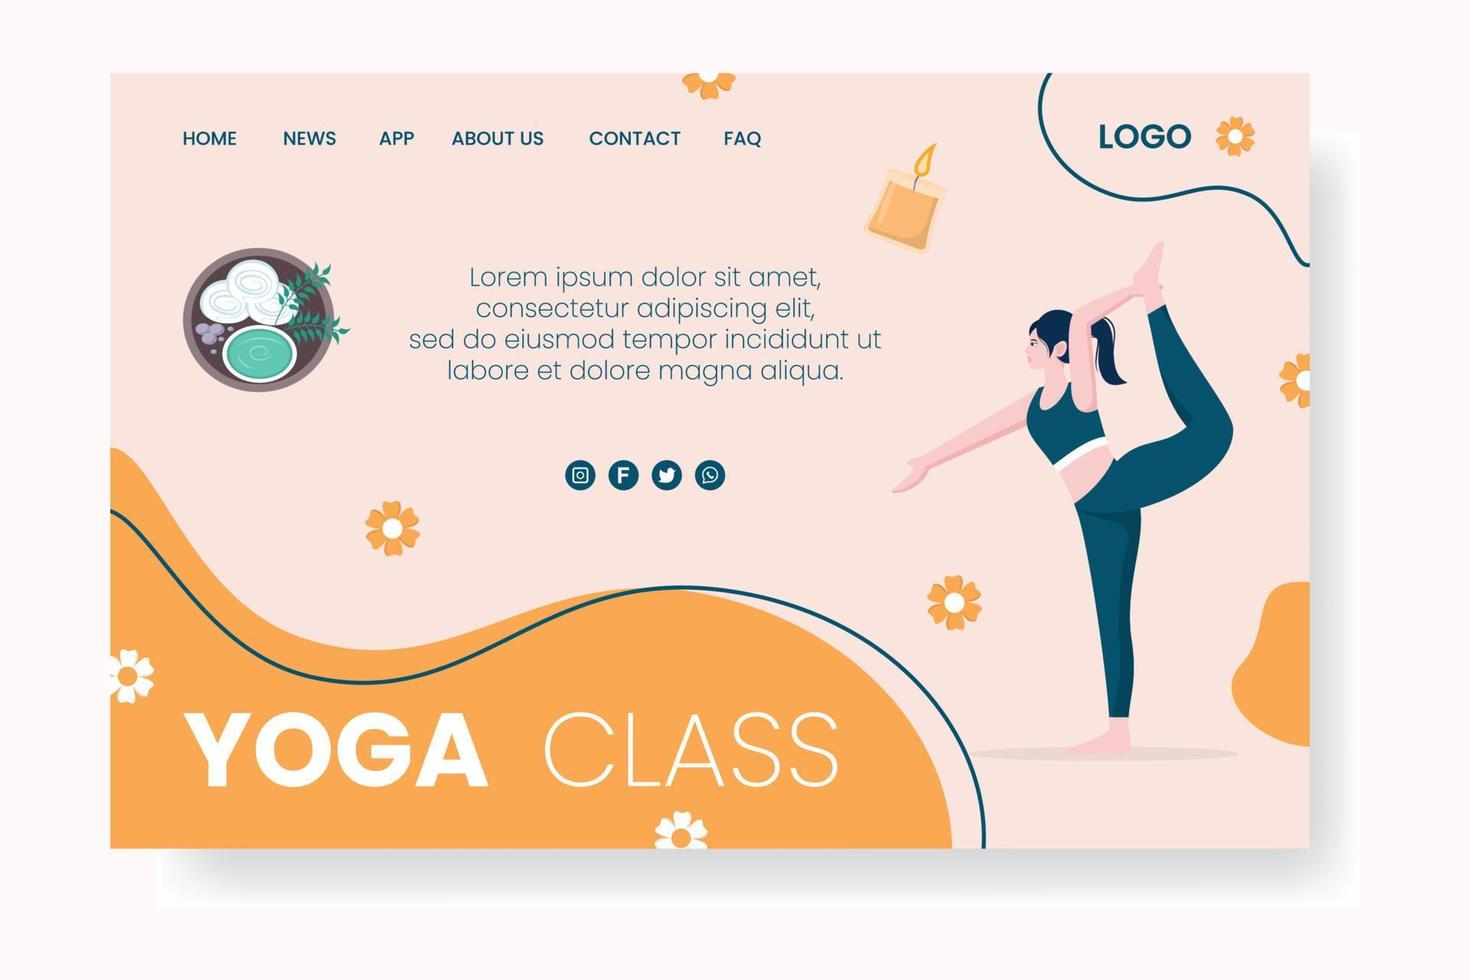 página de inicio de yoga y meditación editable de fondo cuadrado adecuado para medios sociales, alimentación ig, tarjeta, saludos, anuncios impresos y web en Internet vector